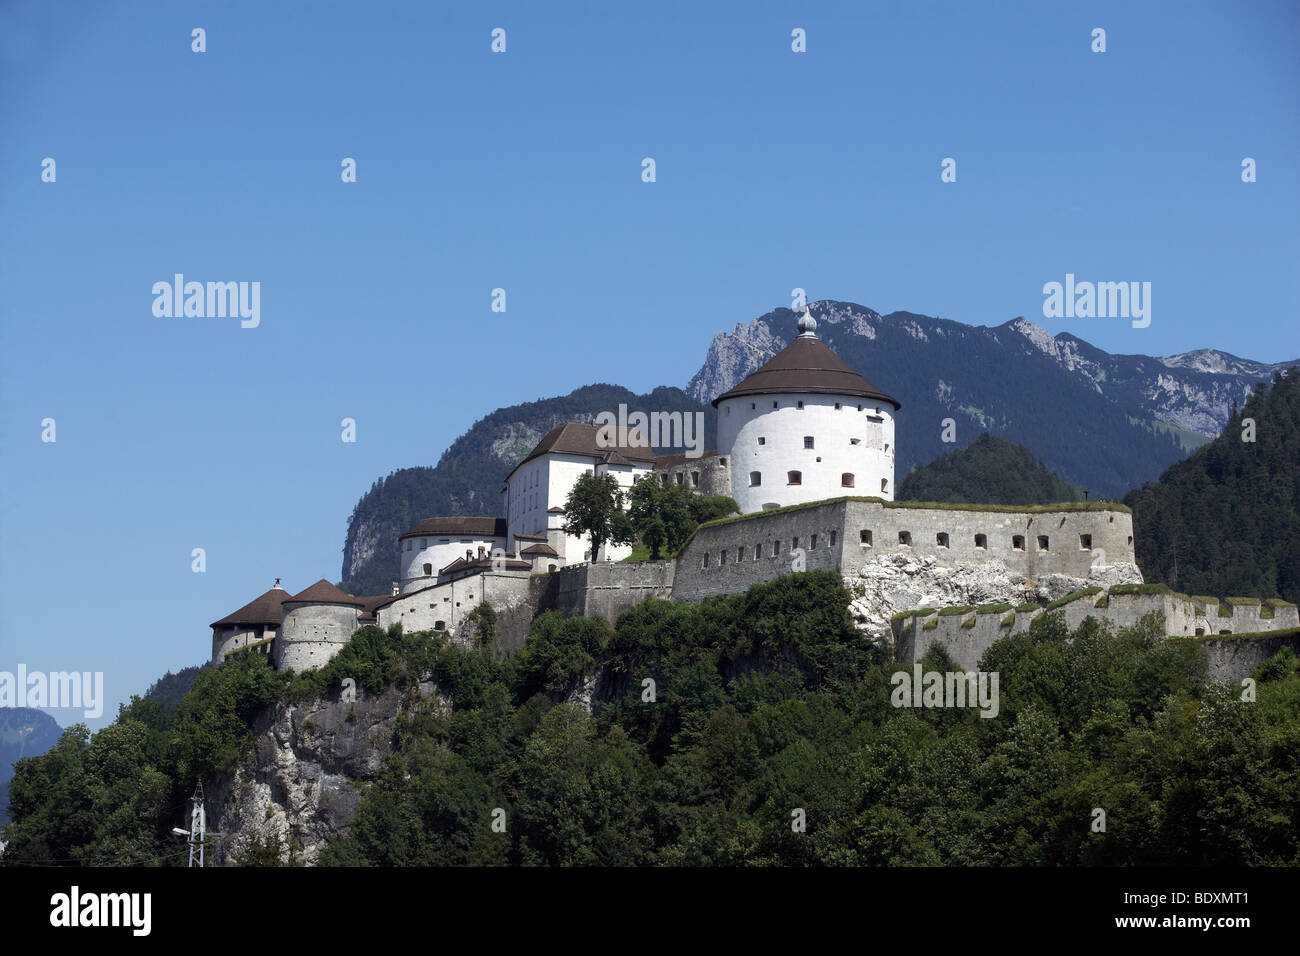 Festung Kufstein castle, Kufstein, Austria, Europe Stock Photo